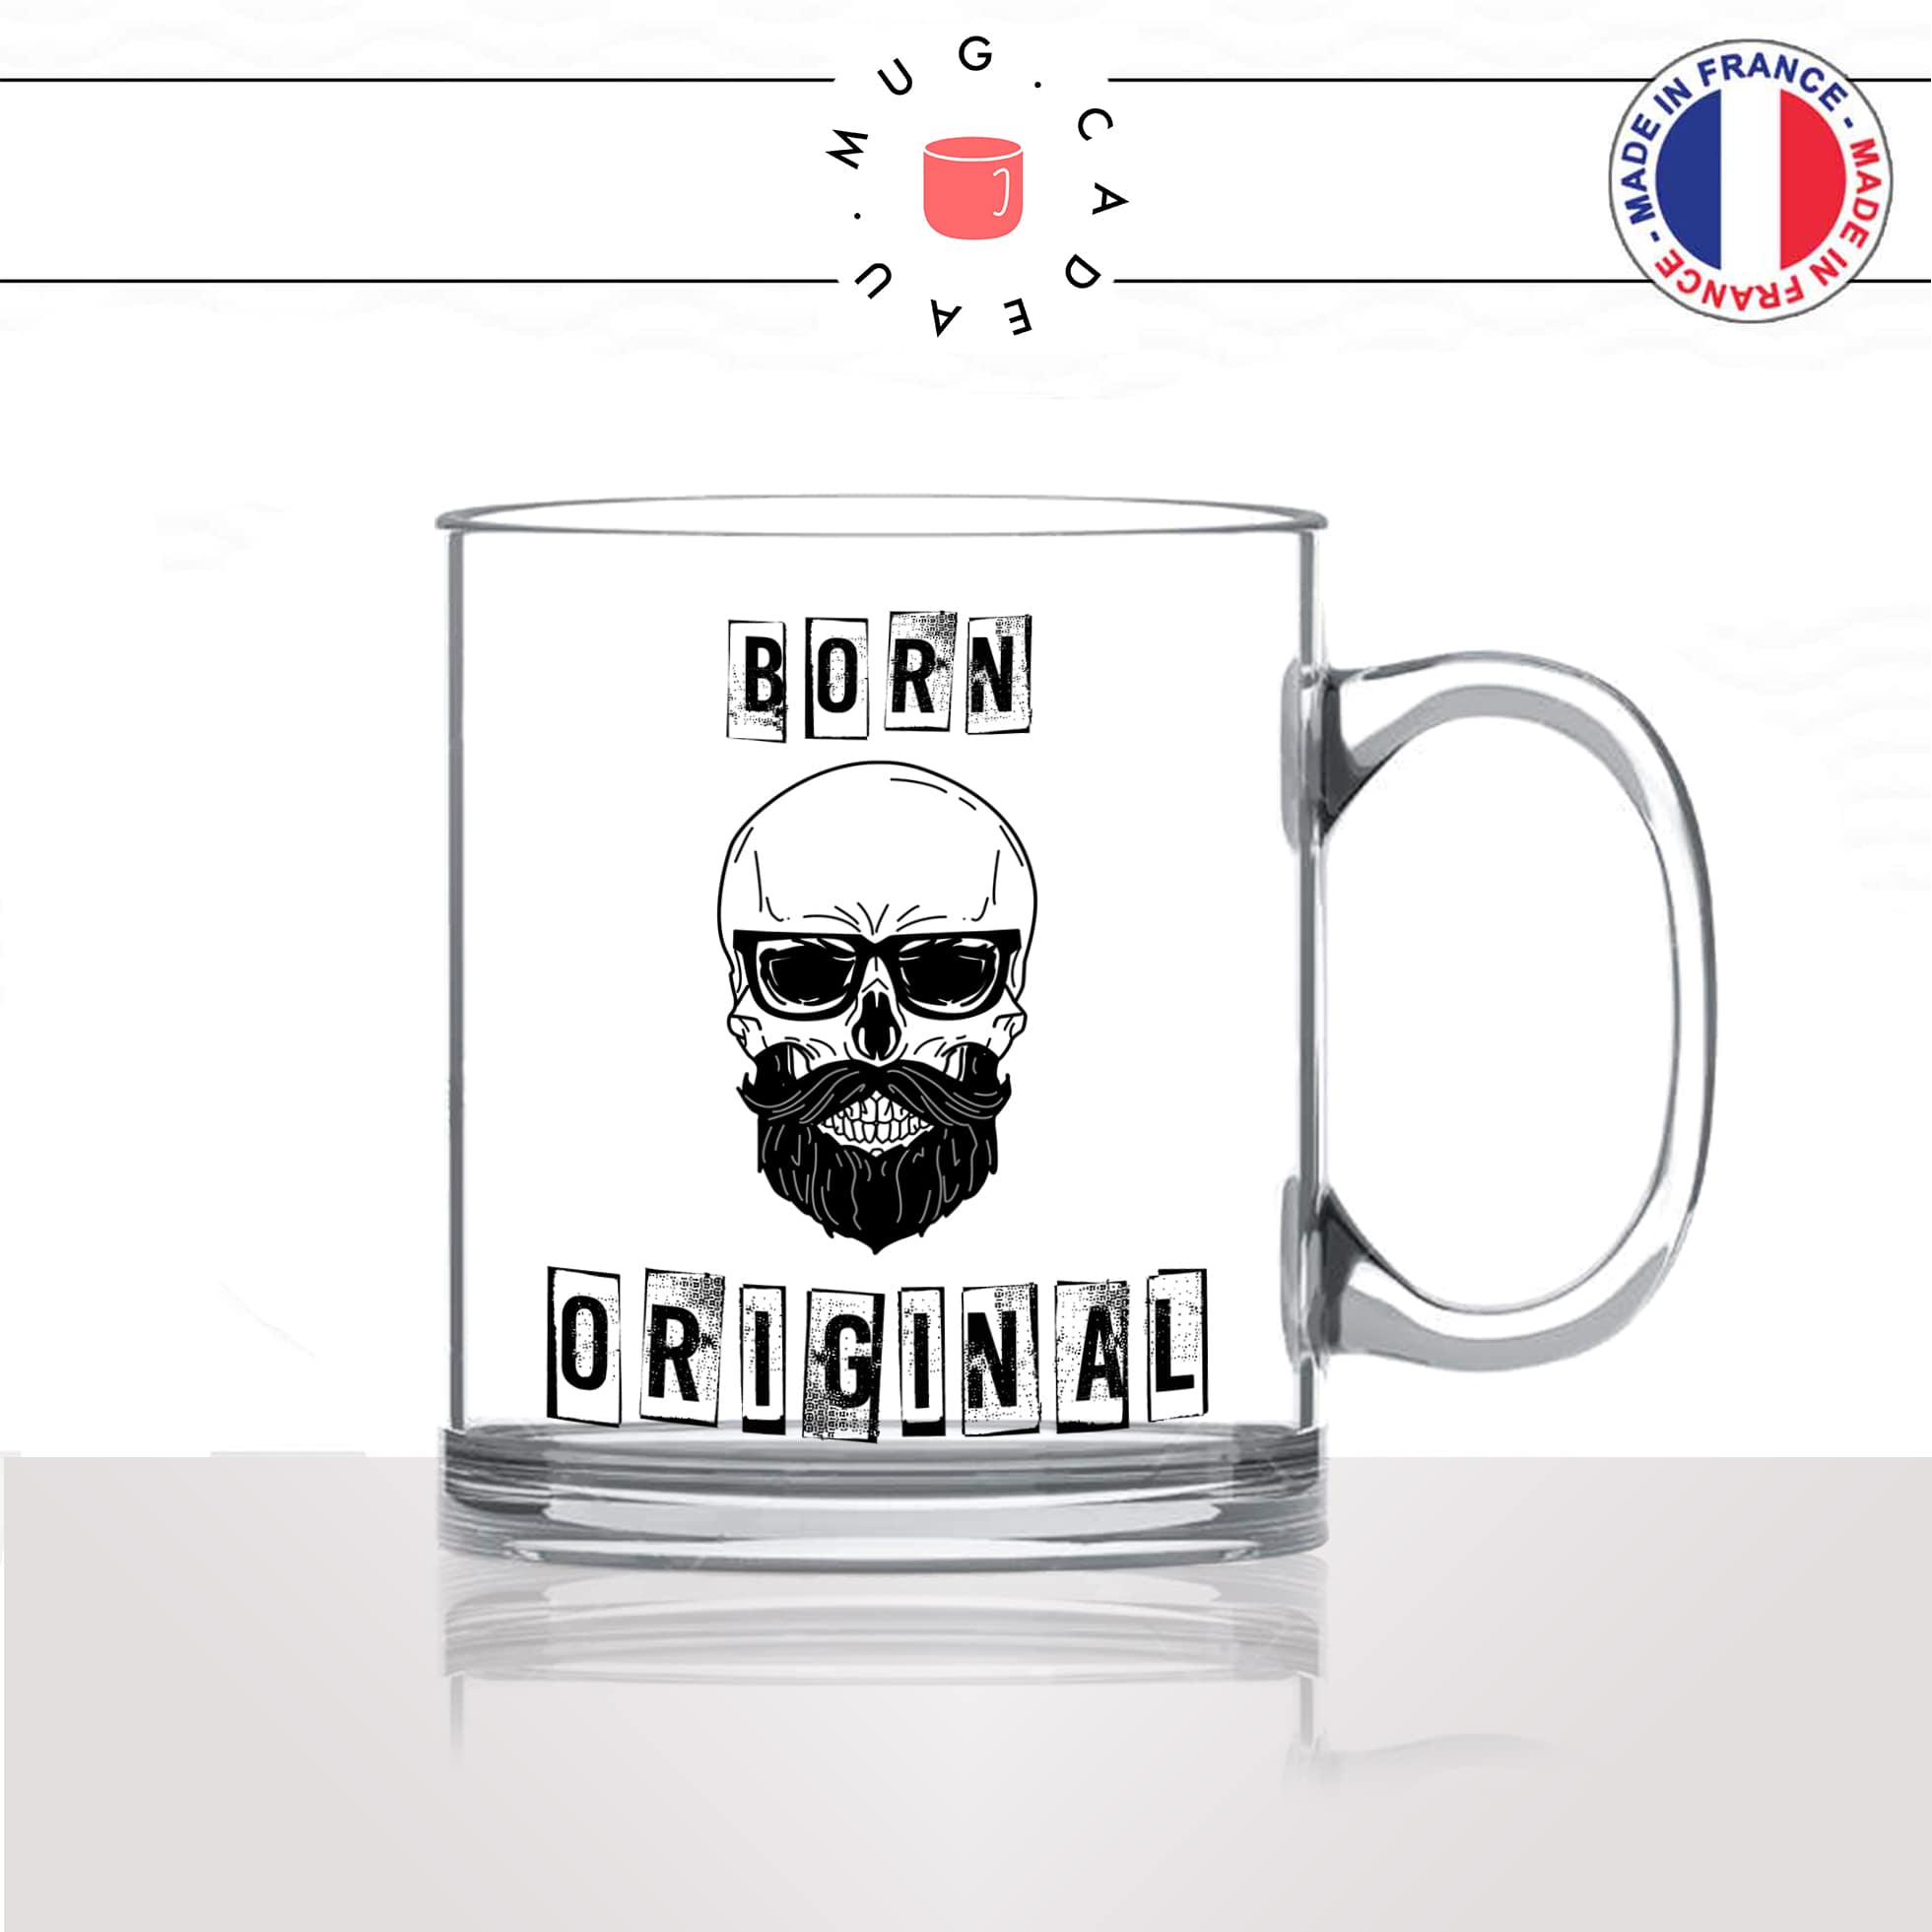 mug-tasse-en-verre-transparent-glass-homme-born-original-barbe-hipster-tete-de-mort-lunettes-de-soleil-mec-stylé-idée-cadeau-fun-cool-café-thé2-min